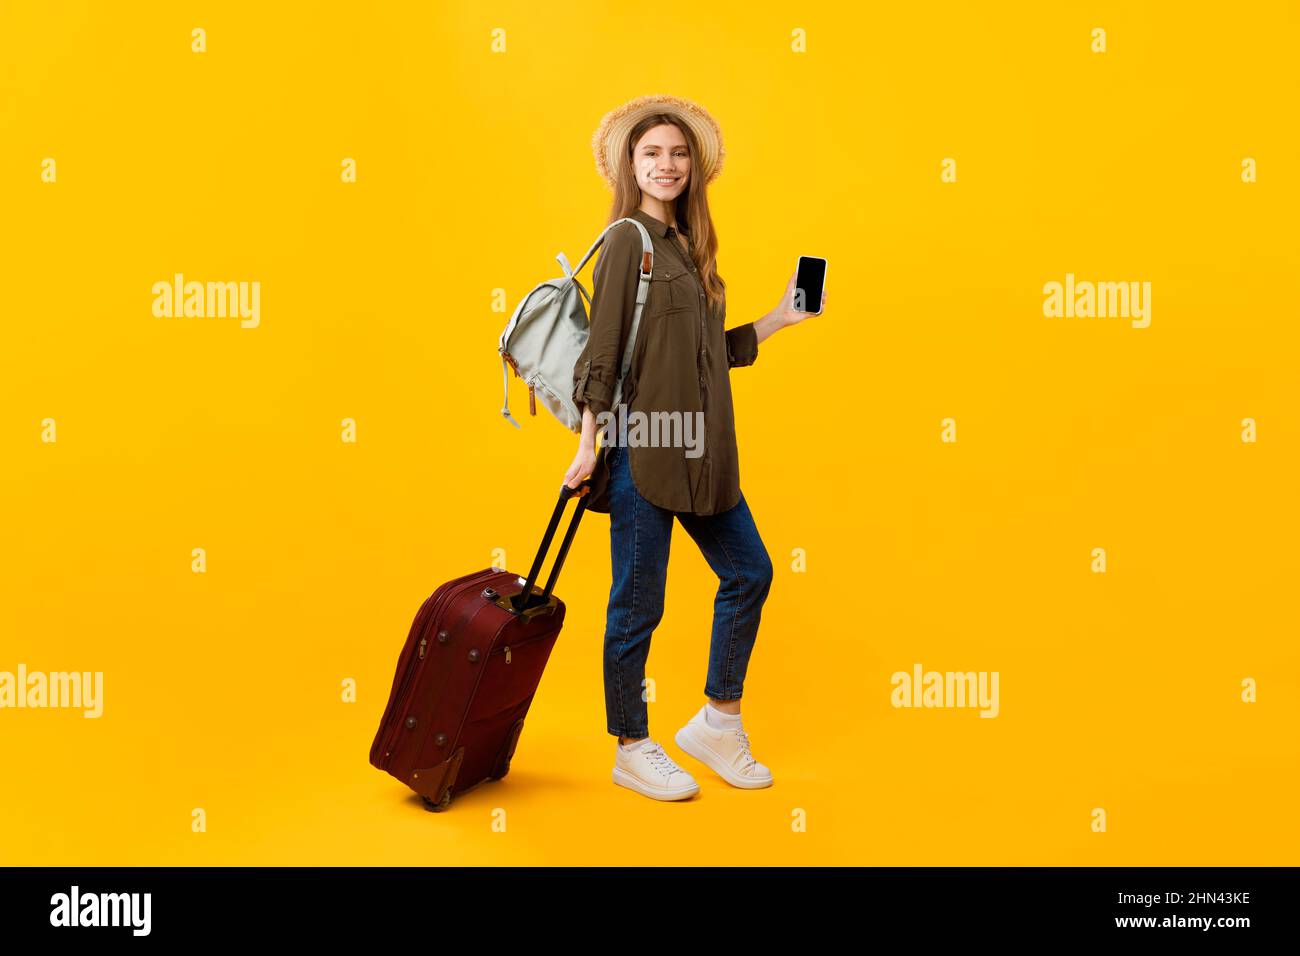 Femme touriste tenant smartphone posant avec des bagages sur fond jaune Banque D'Images